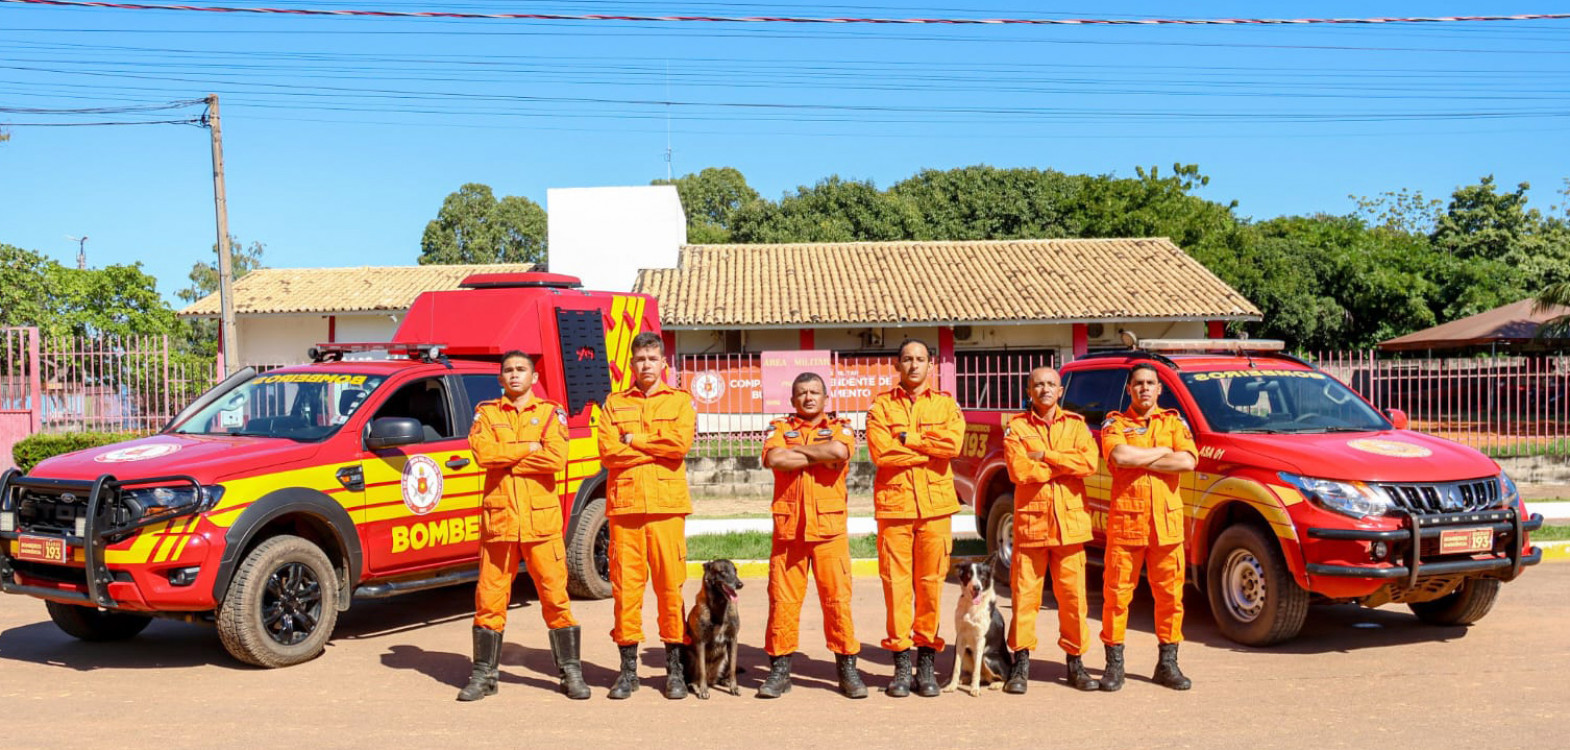  Seção de Busca, Resgate e Salvamento com Cães (SBRESC), integrante da Companhia Independente de Busca e Salvamento (Cibs) do Corpo de Bombeiros Militar do Tocantins, desempenha um papel fundamental na operação de resgate em situações de emergência